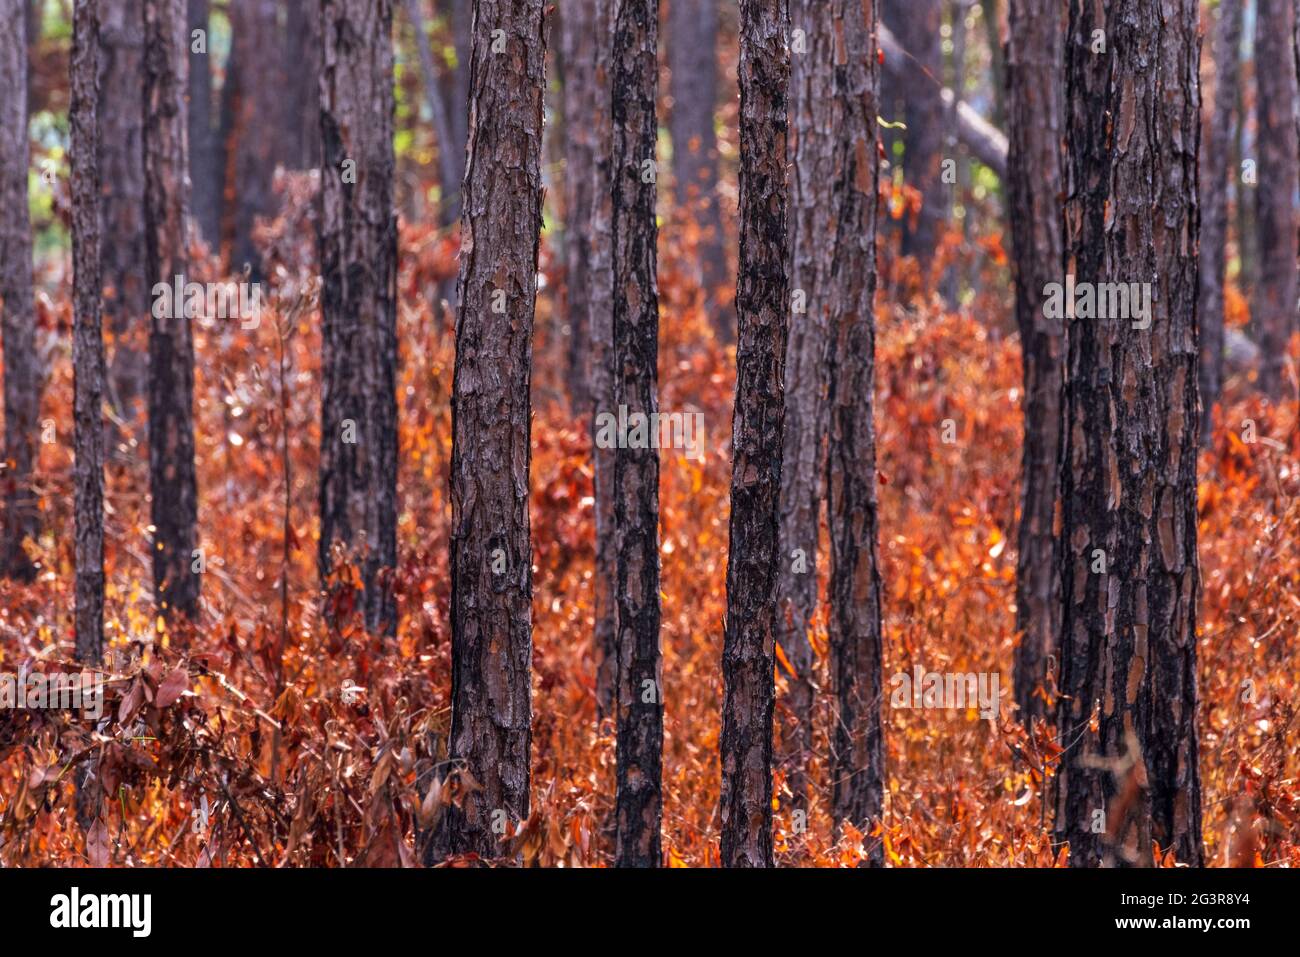 Flammenvernarbte Langblatt-Kiefern wachsen im Weeks Bay Pitcher Plant Moor in Alabama. Eine kontrollierte Verbrennung trägt dazu bei, das Moor wie Naturbrände zu erhalten Stockfoto